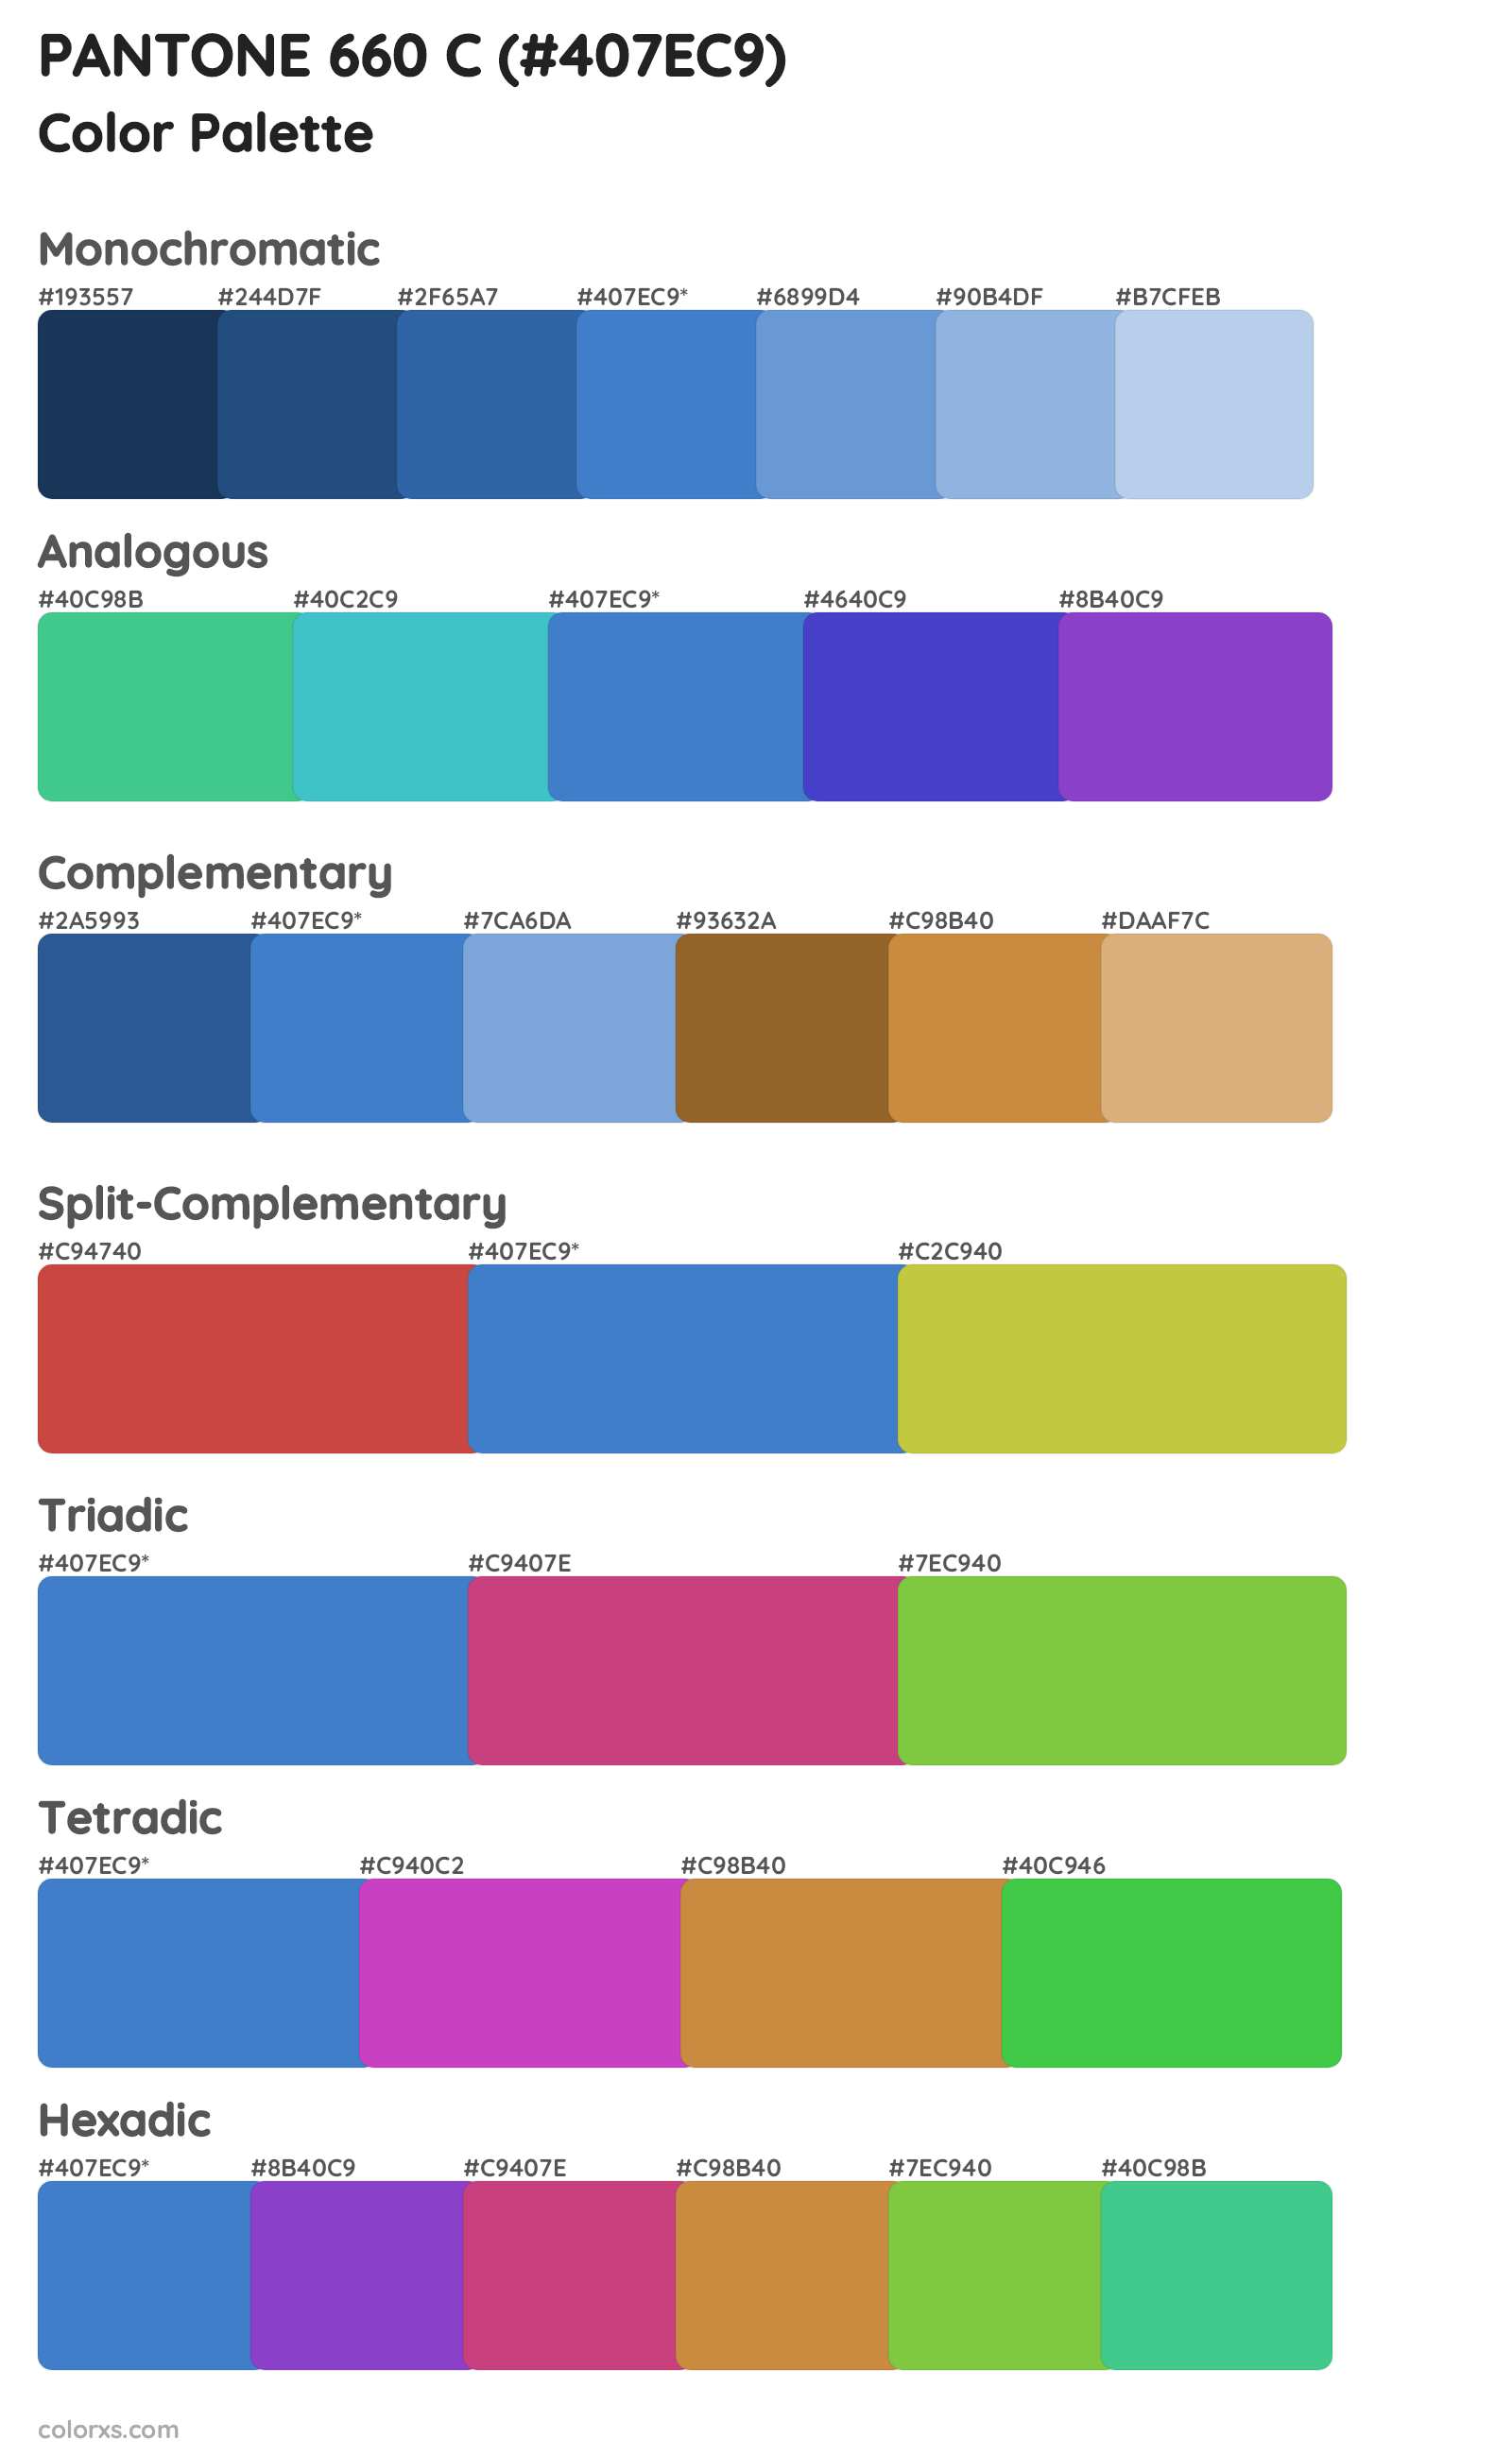 PANTONE 660 C color palettes and color scheme combinations - colorxs.com